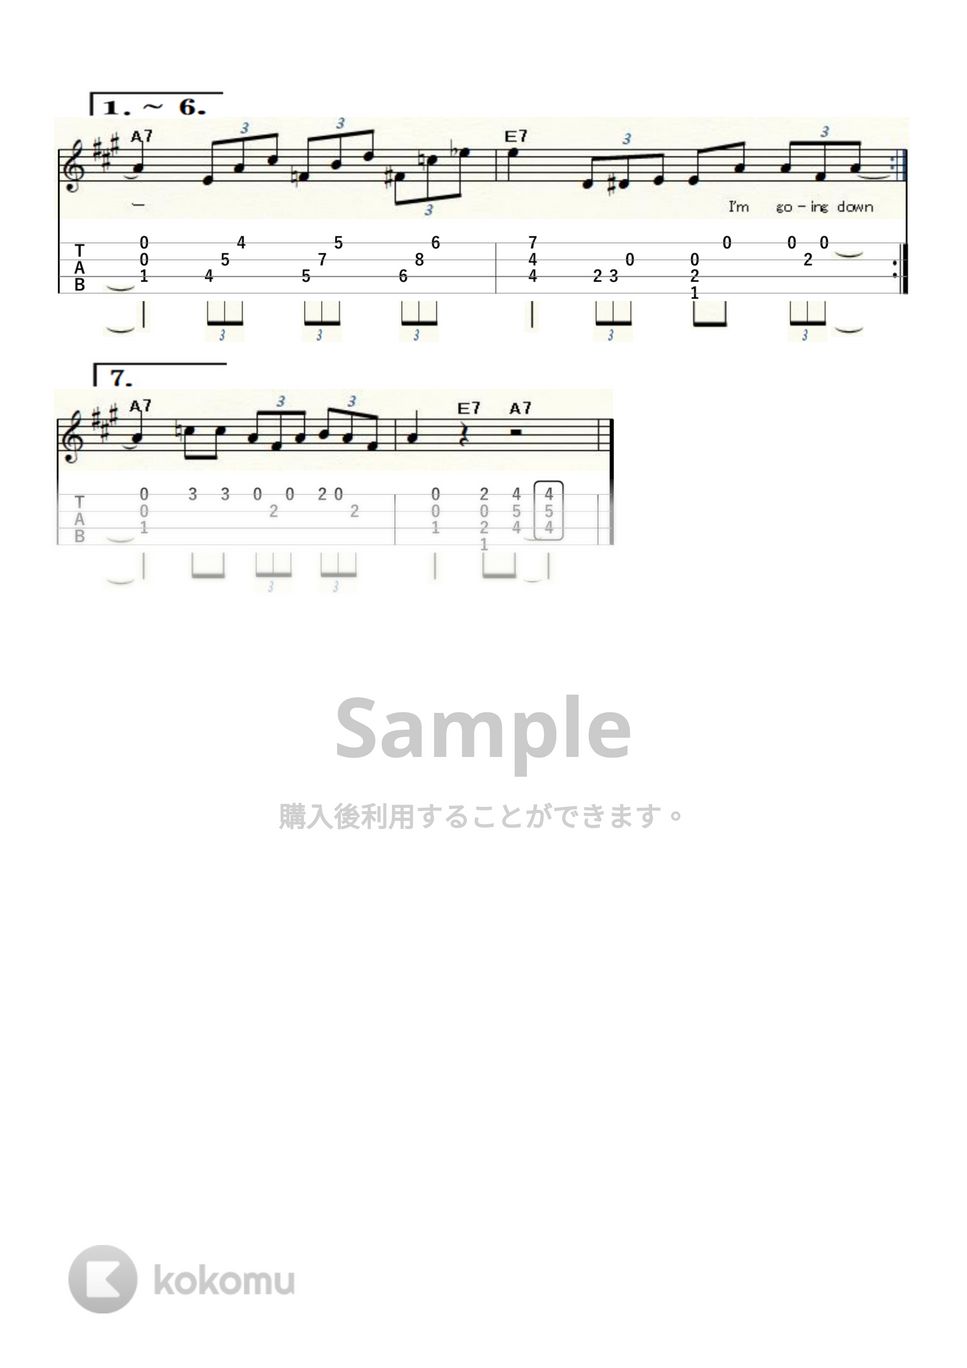 ビッグ・ビル・ブルーンジー - Key to the Highway (ｳｸﾚﾚｿﾛ/Low-G/中級) by ukulelepapa